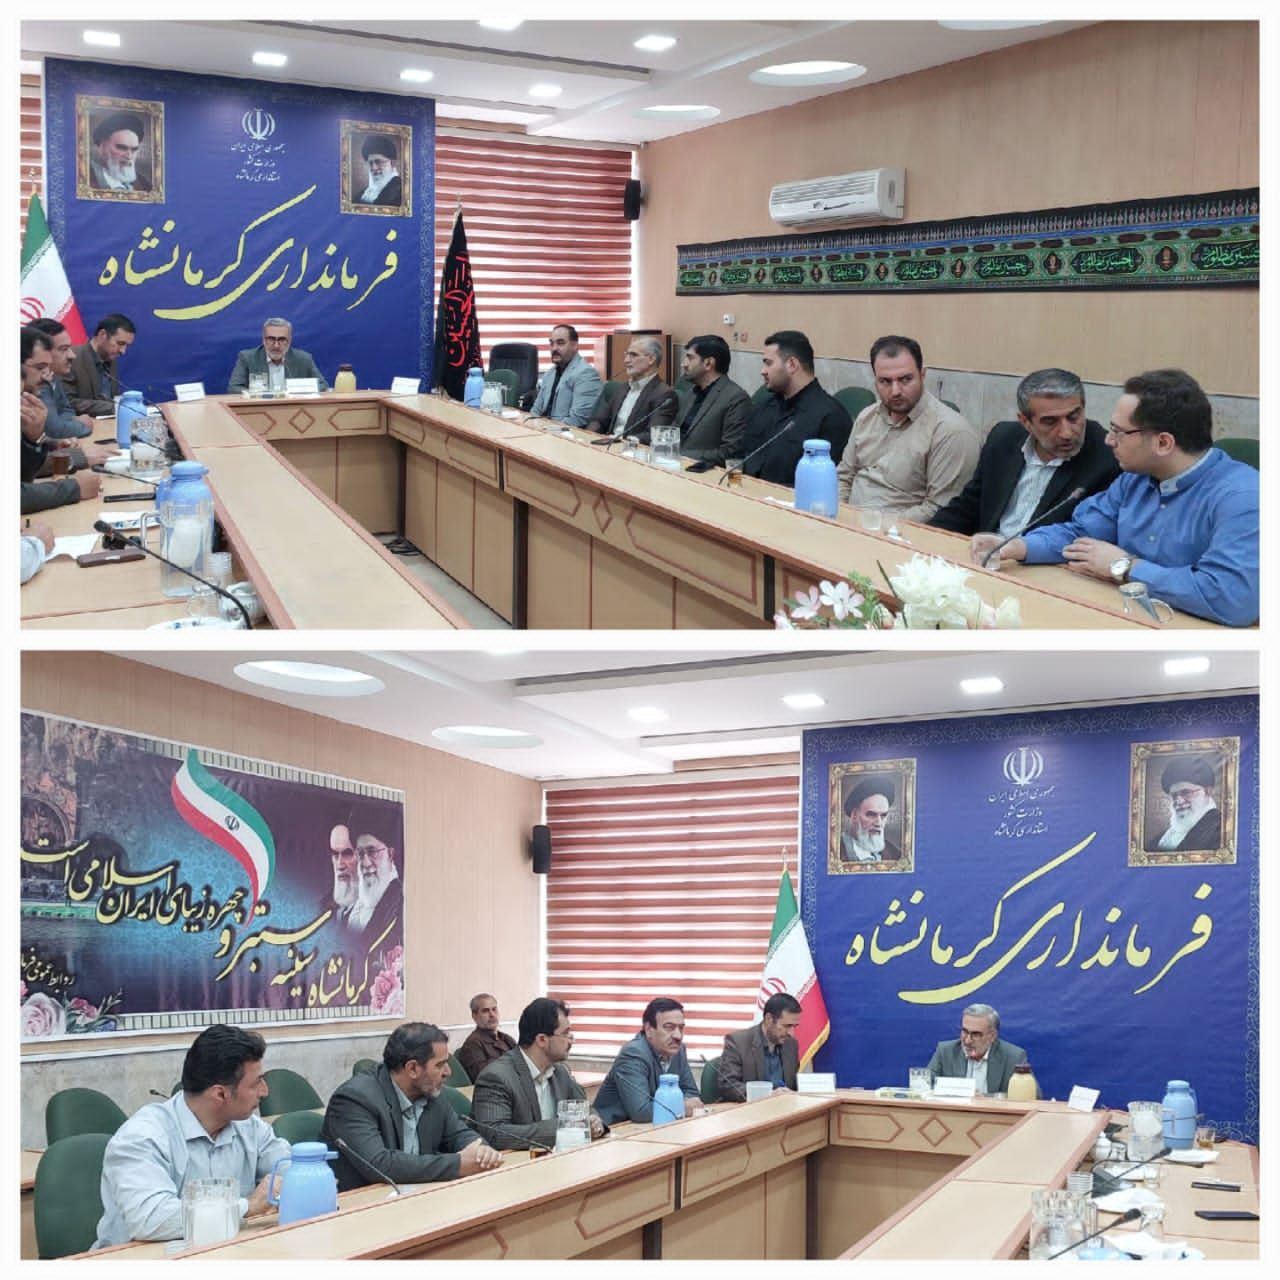 هیئت رئیسه شورای شهر کرمانشاه انتخاب شدند